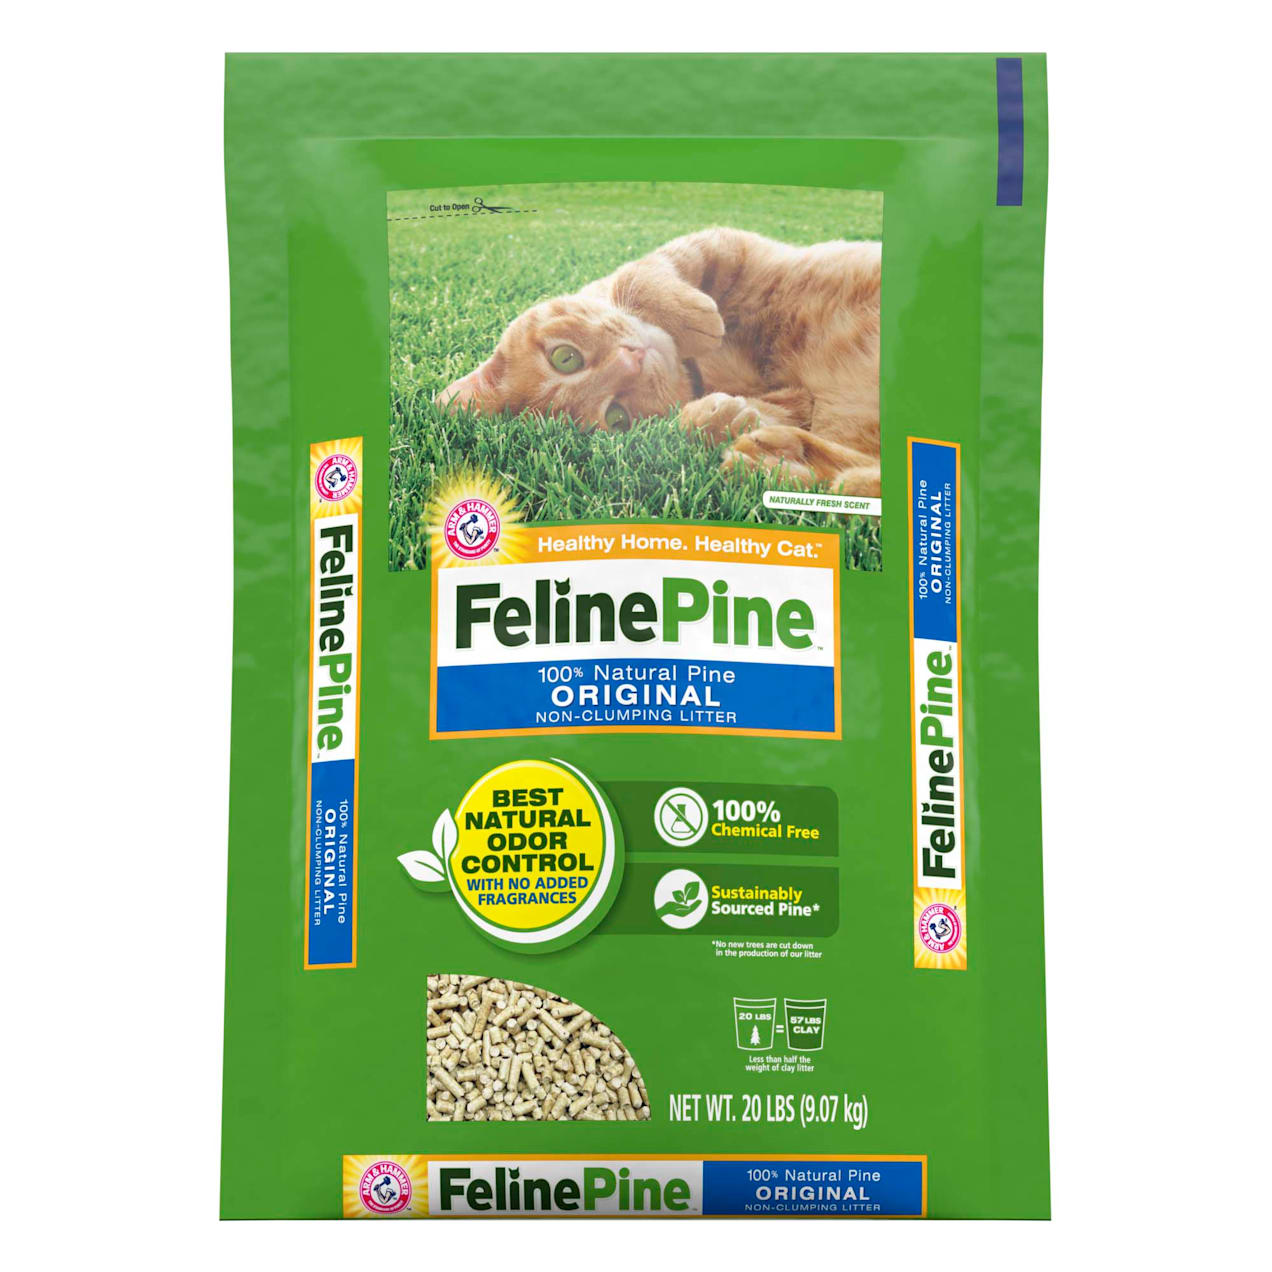 Feline Pine Cat Litter Petco